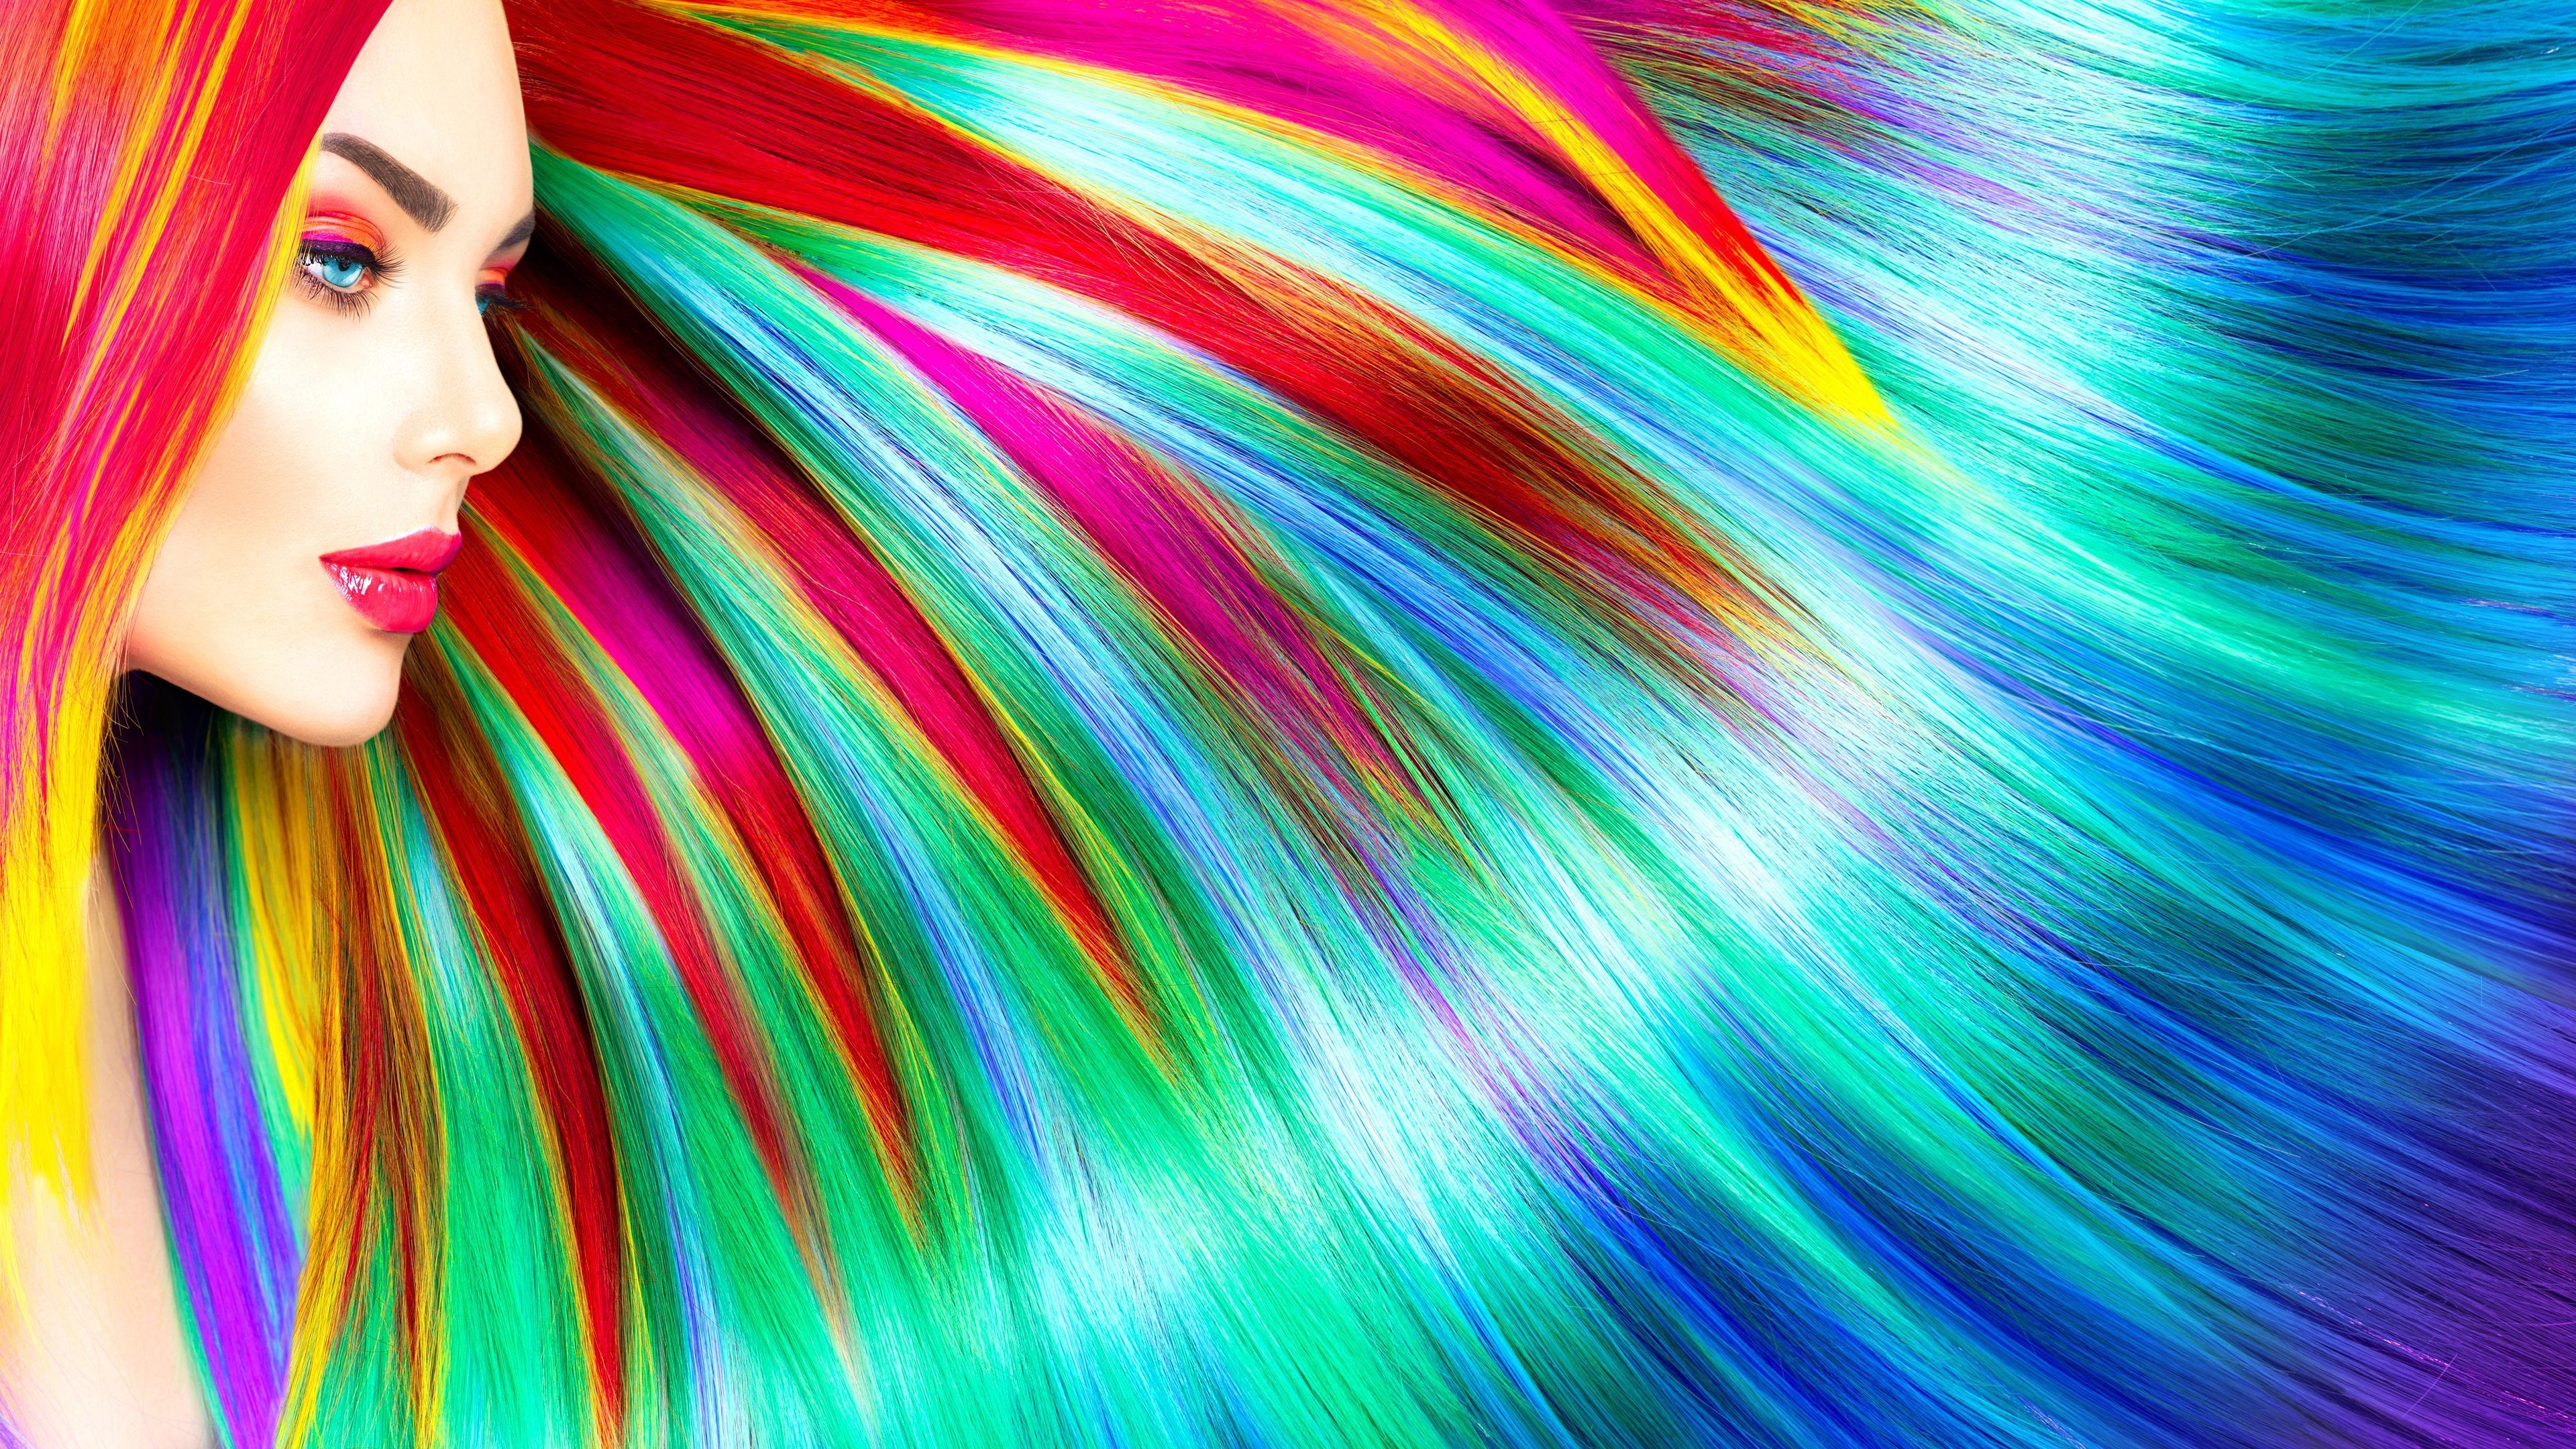 Rainbow Colorful Girl Hairs 5k Rainbow Wallpaper, Hd Wallpaper, Hairs Wallpaper, Girls Wallpaper, Colorf. Abstract Wallpaper, Rainbow Wallpaper, Colorful Girl